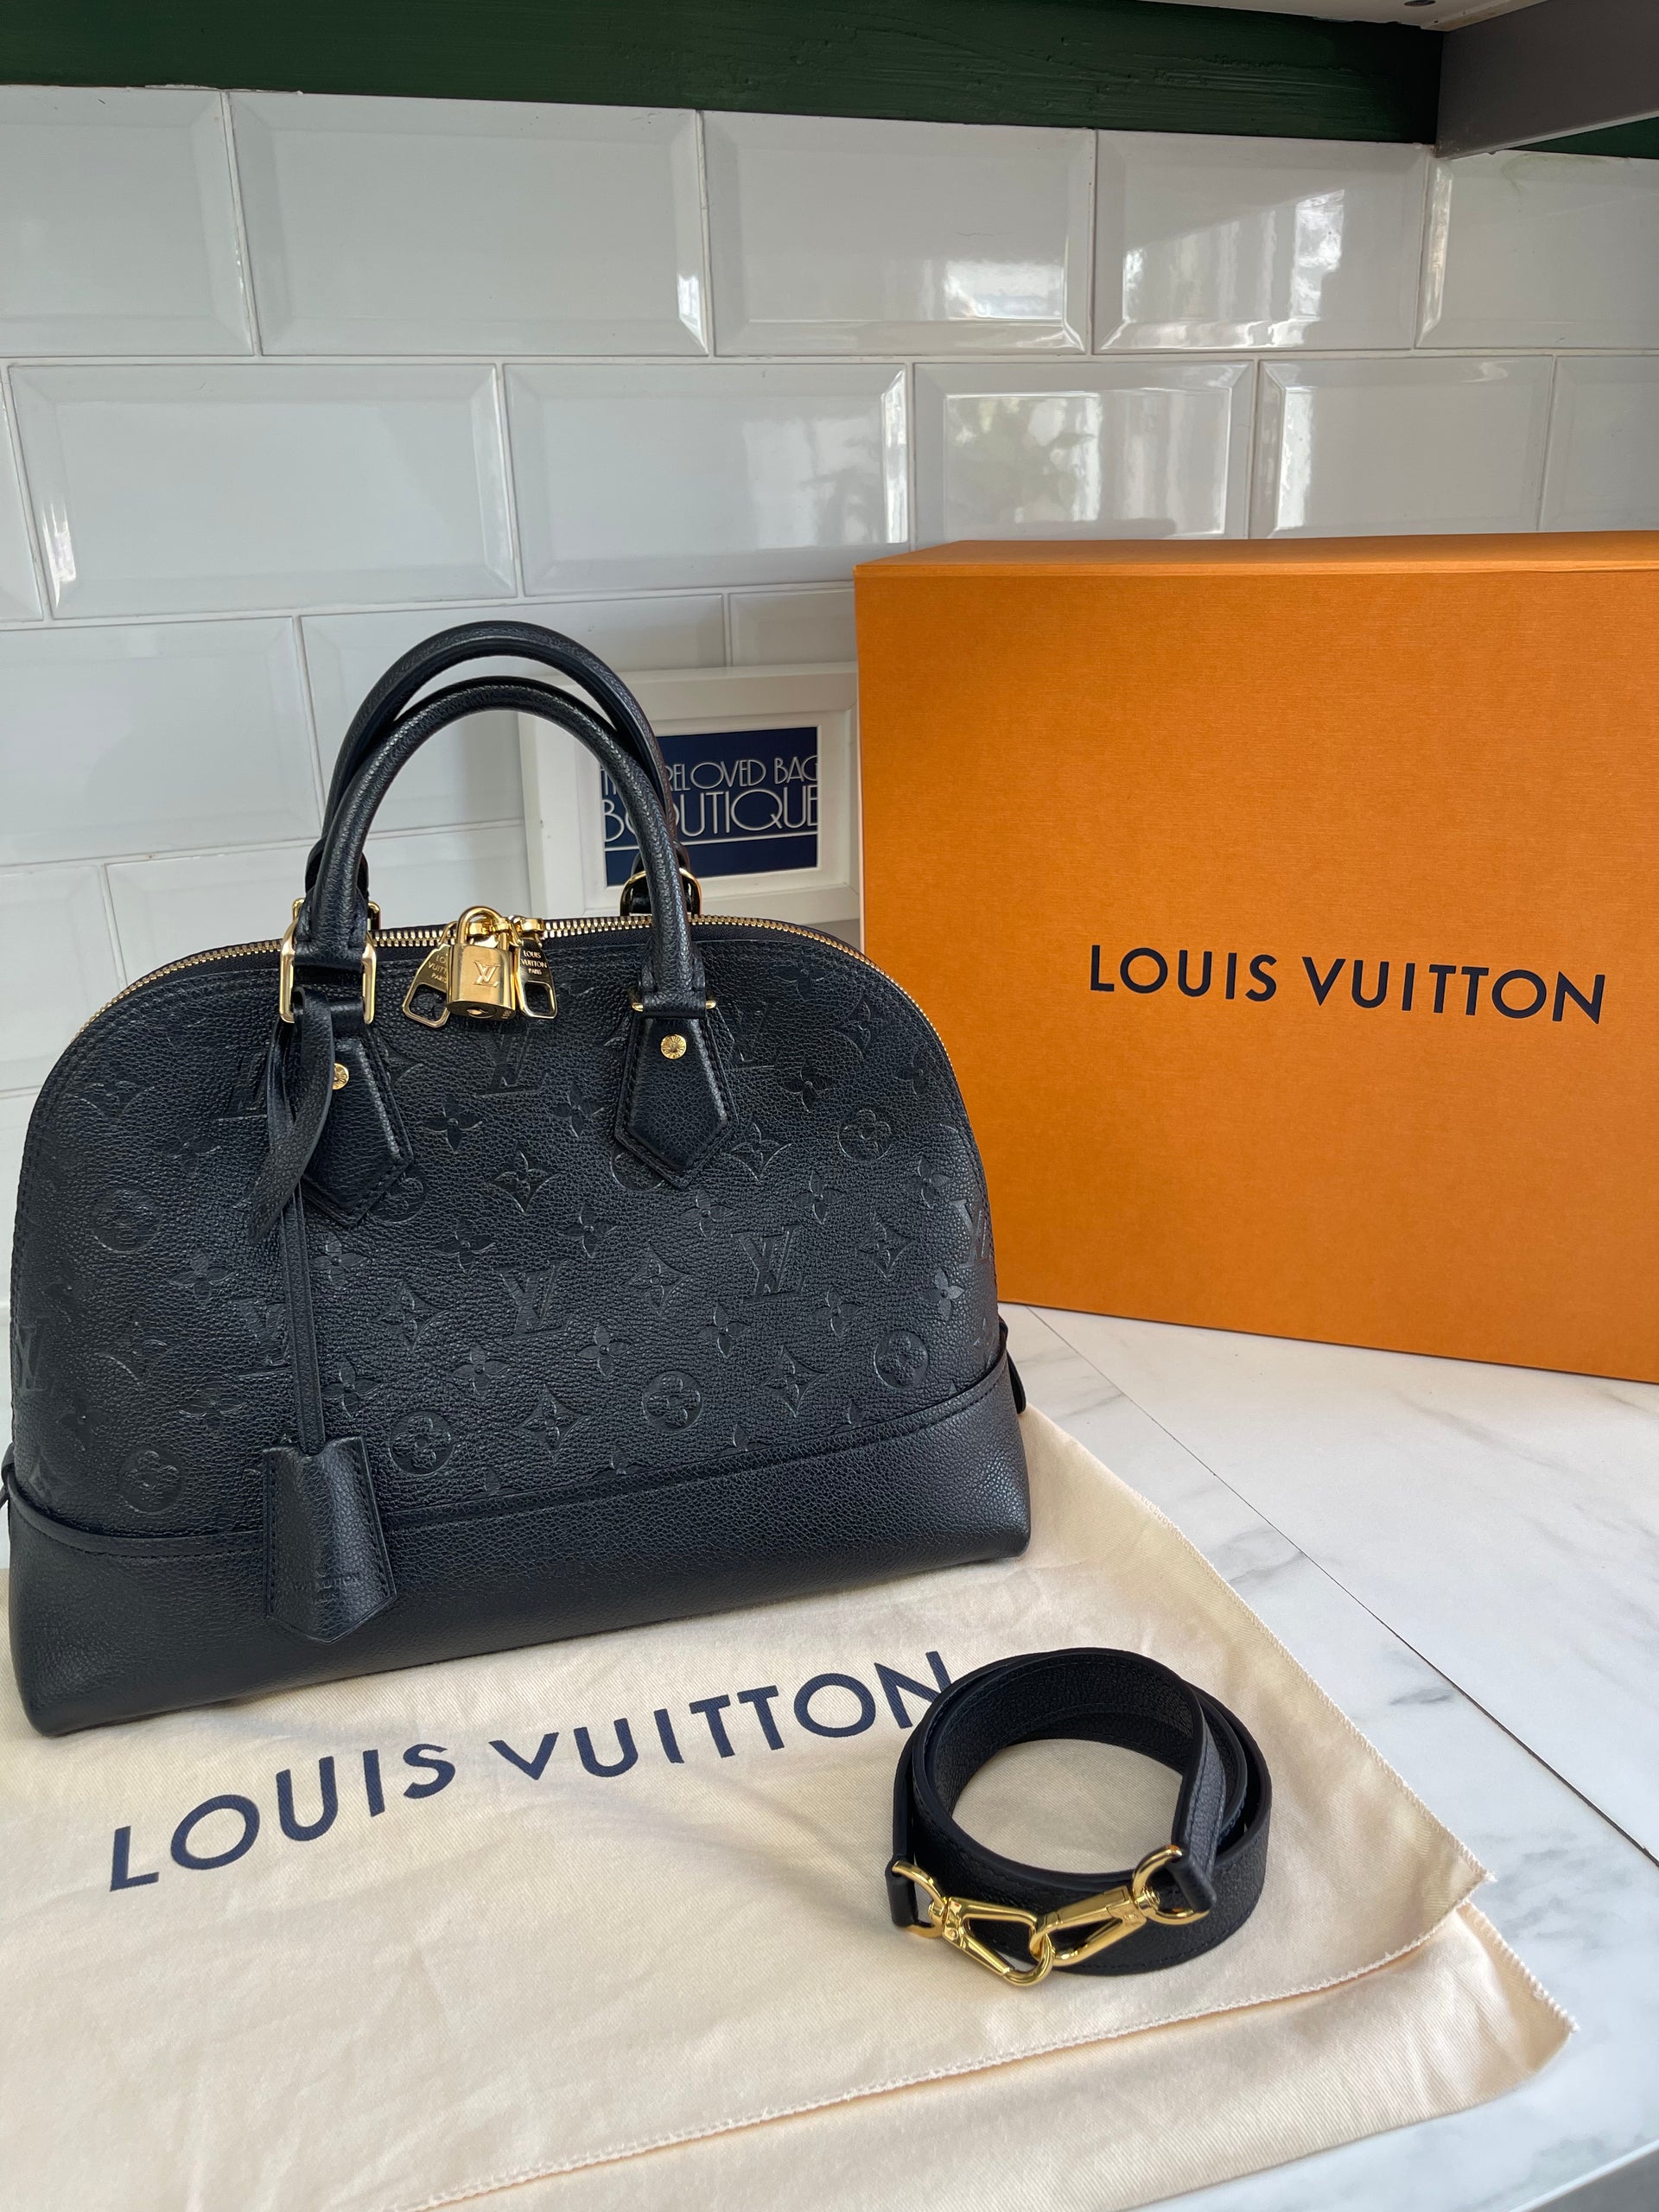 Sold at Auction: Louis Vuitton, Louis Vuitton - Neo Alma PM